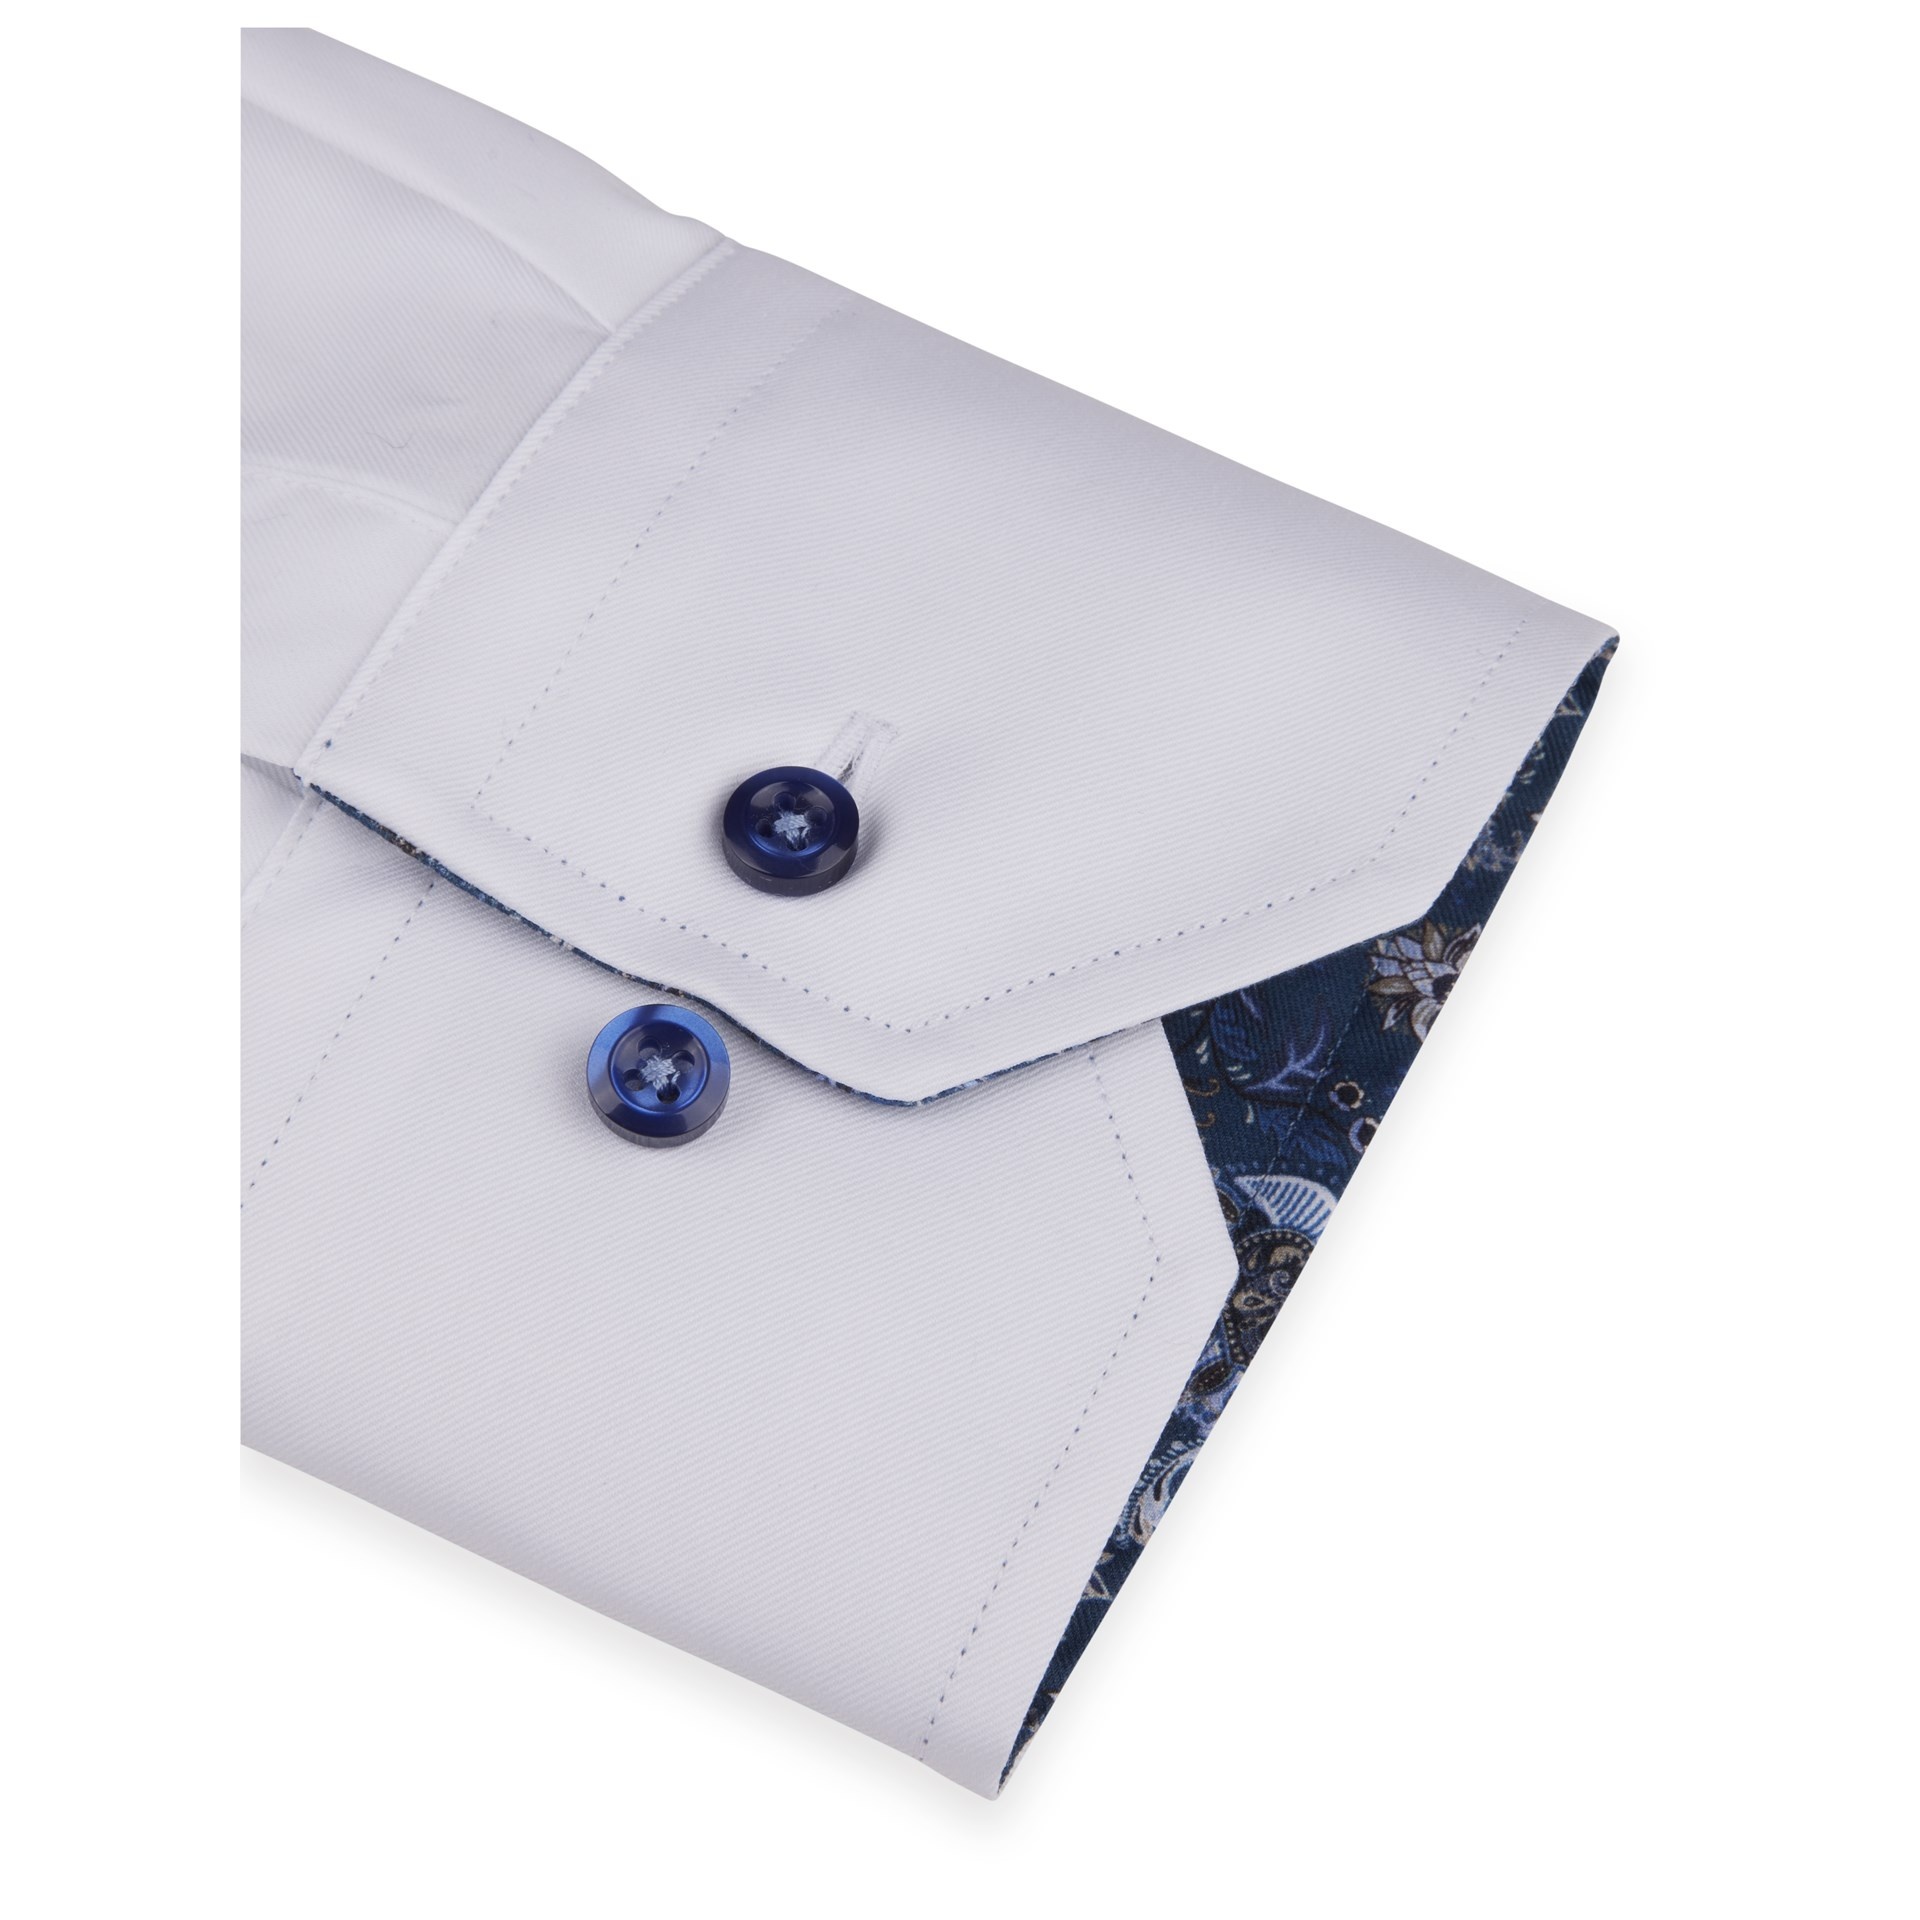 Stenstroms navy floral trim blue button white shirt